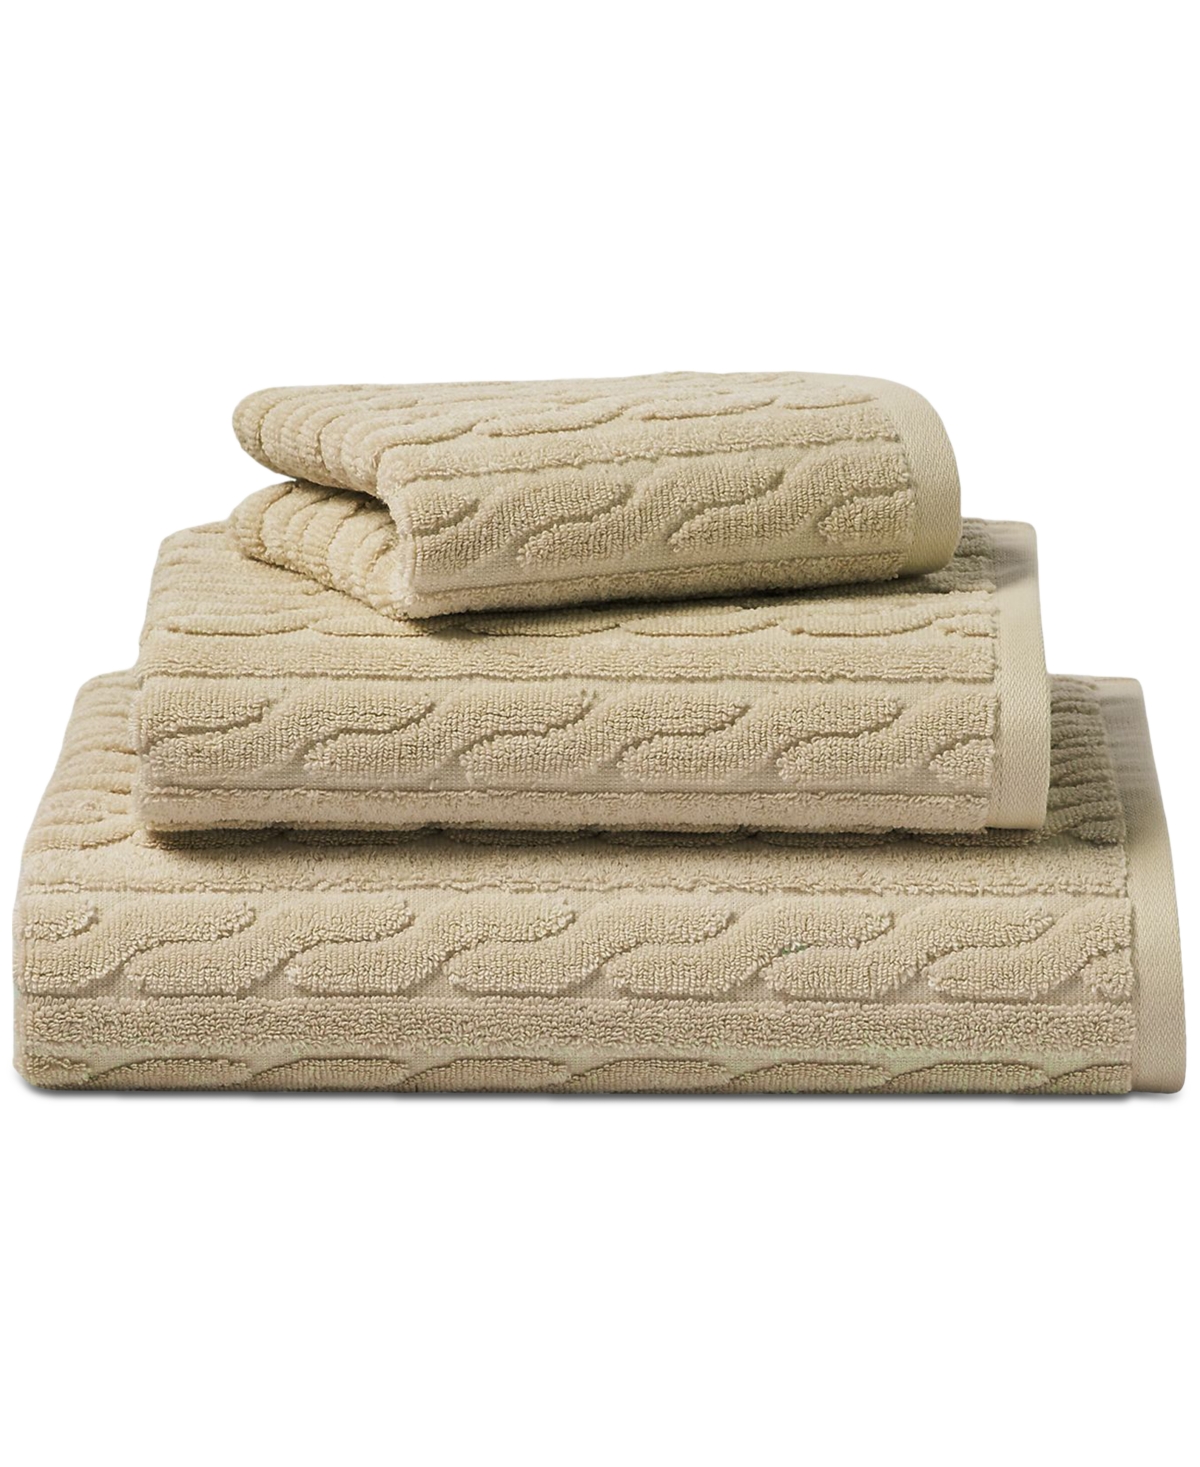 Lauren Ralph Lauren Sanders Cable Hand Towel Bedding In Solid Tan